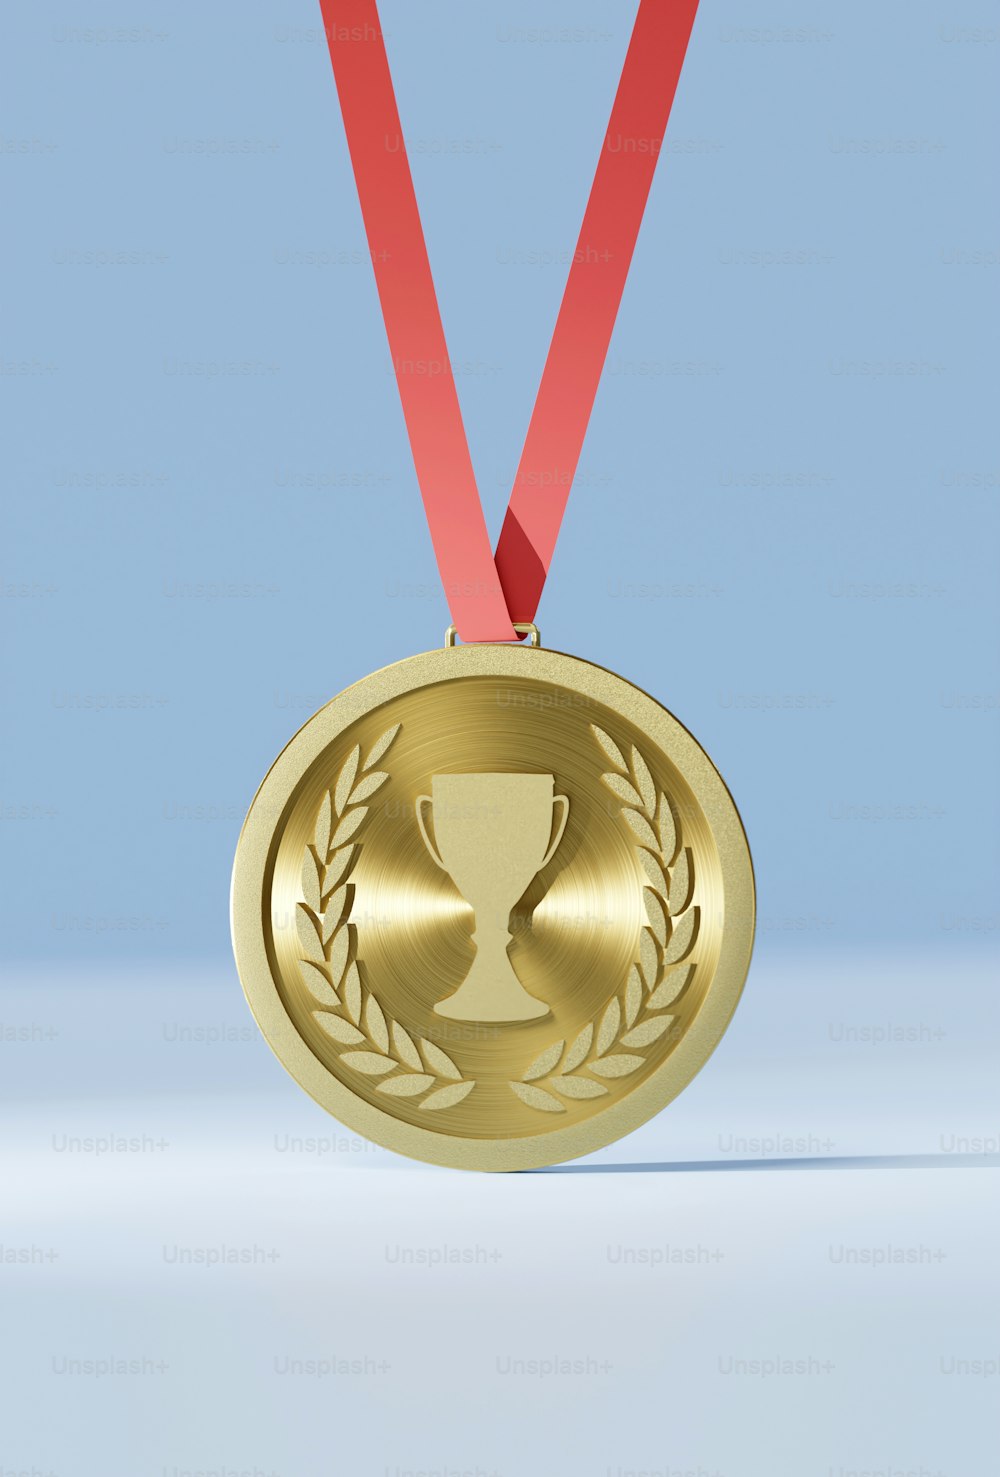 une médaille d’or entourée d’un ruban rouge